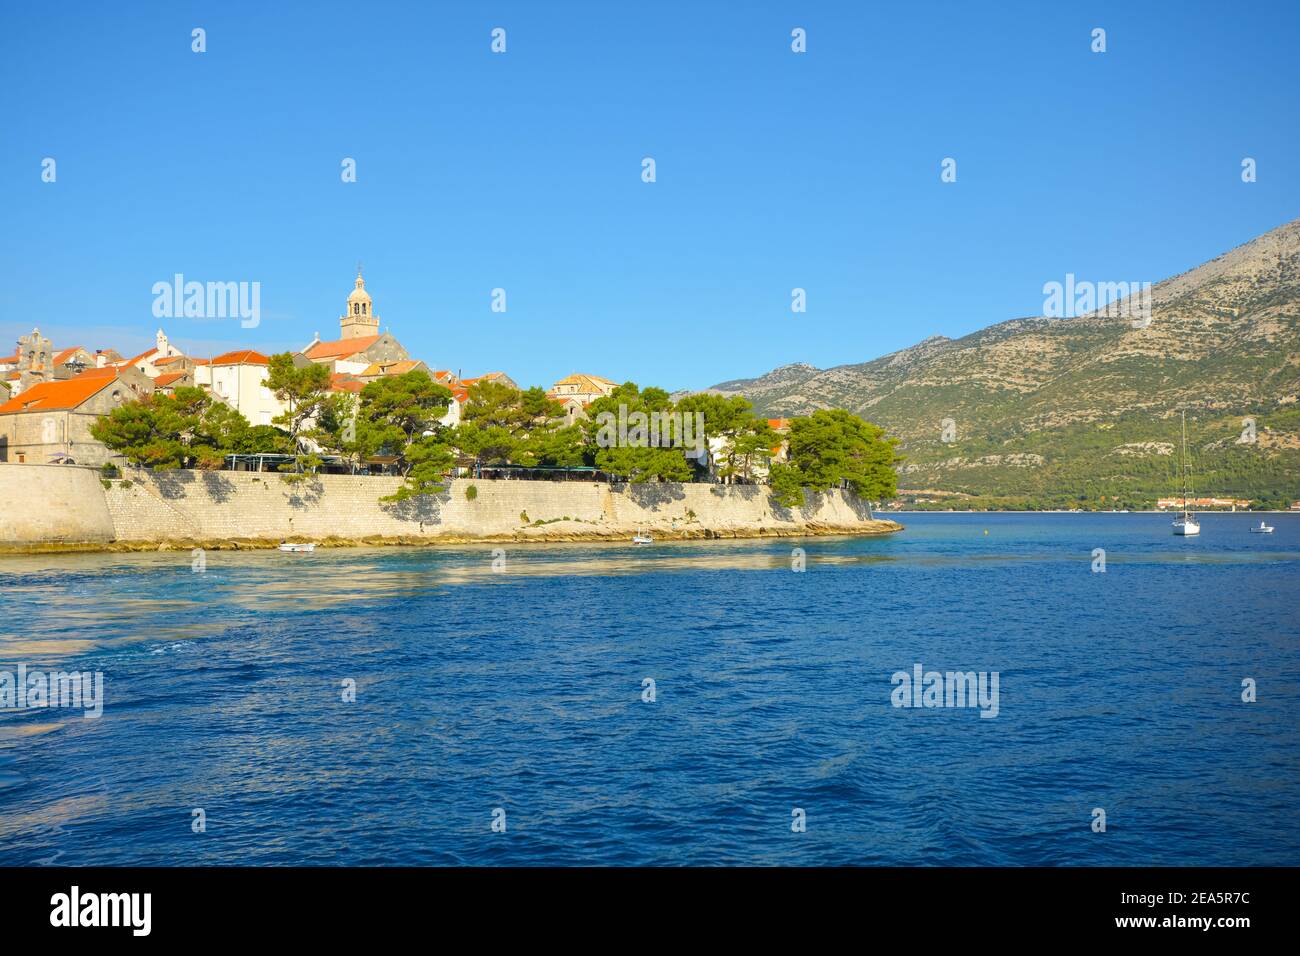 Blick von der Adria auf die Insel Korcula, Kroatien, an der dalmatinischen Küste an einem sonnigen Sommertag. Stockfoto